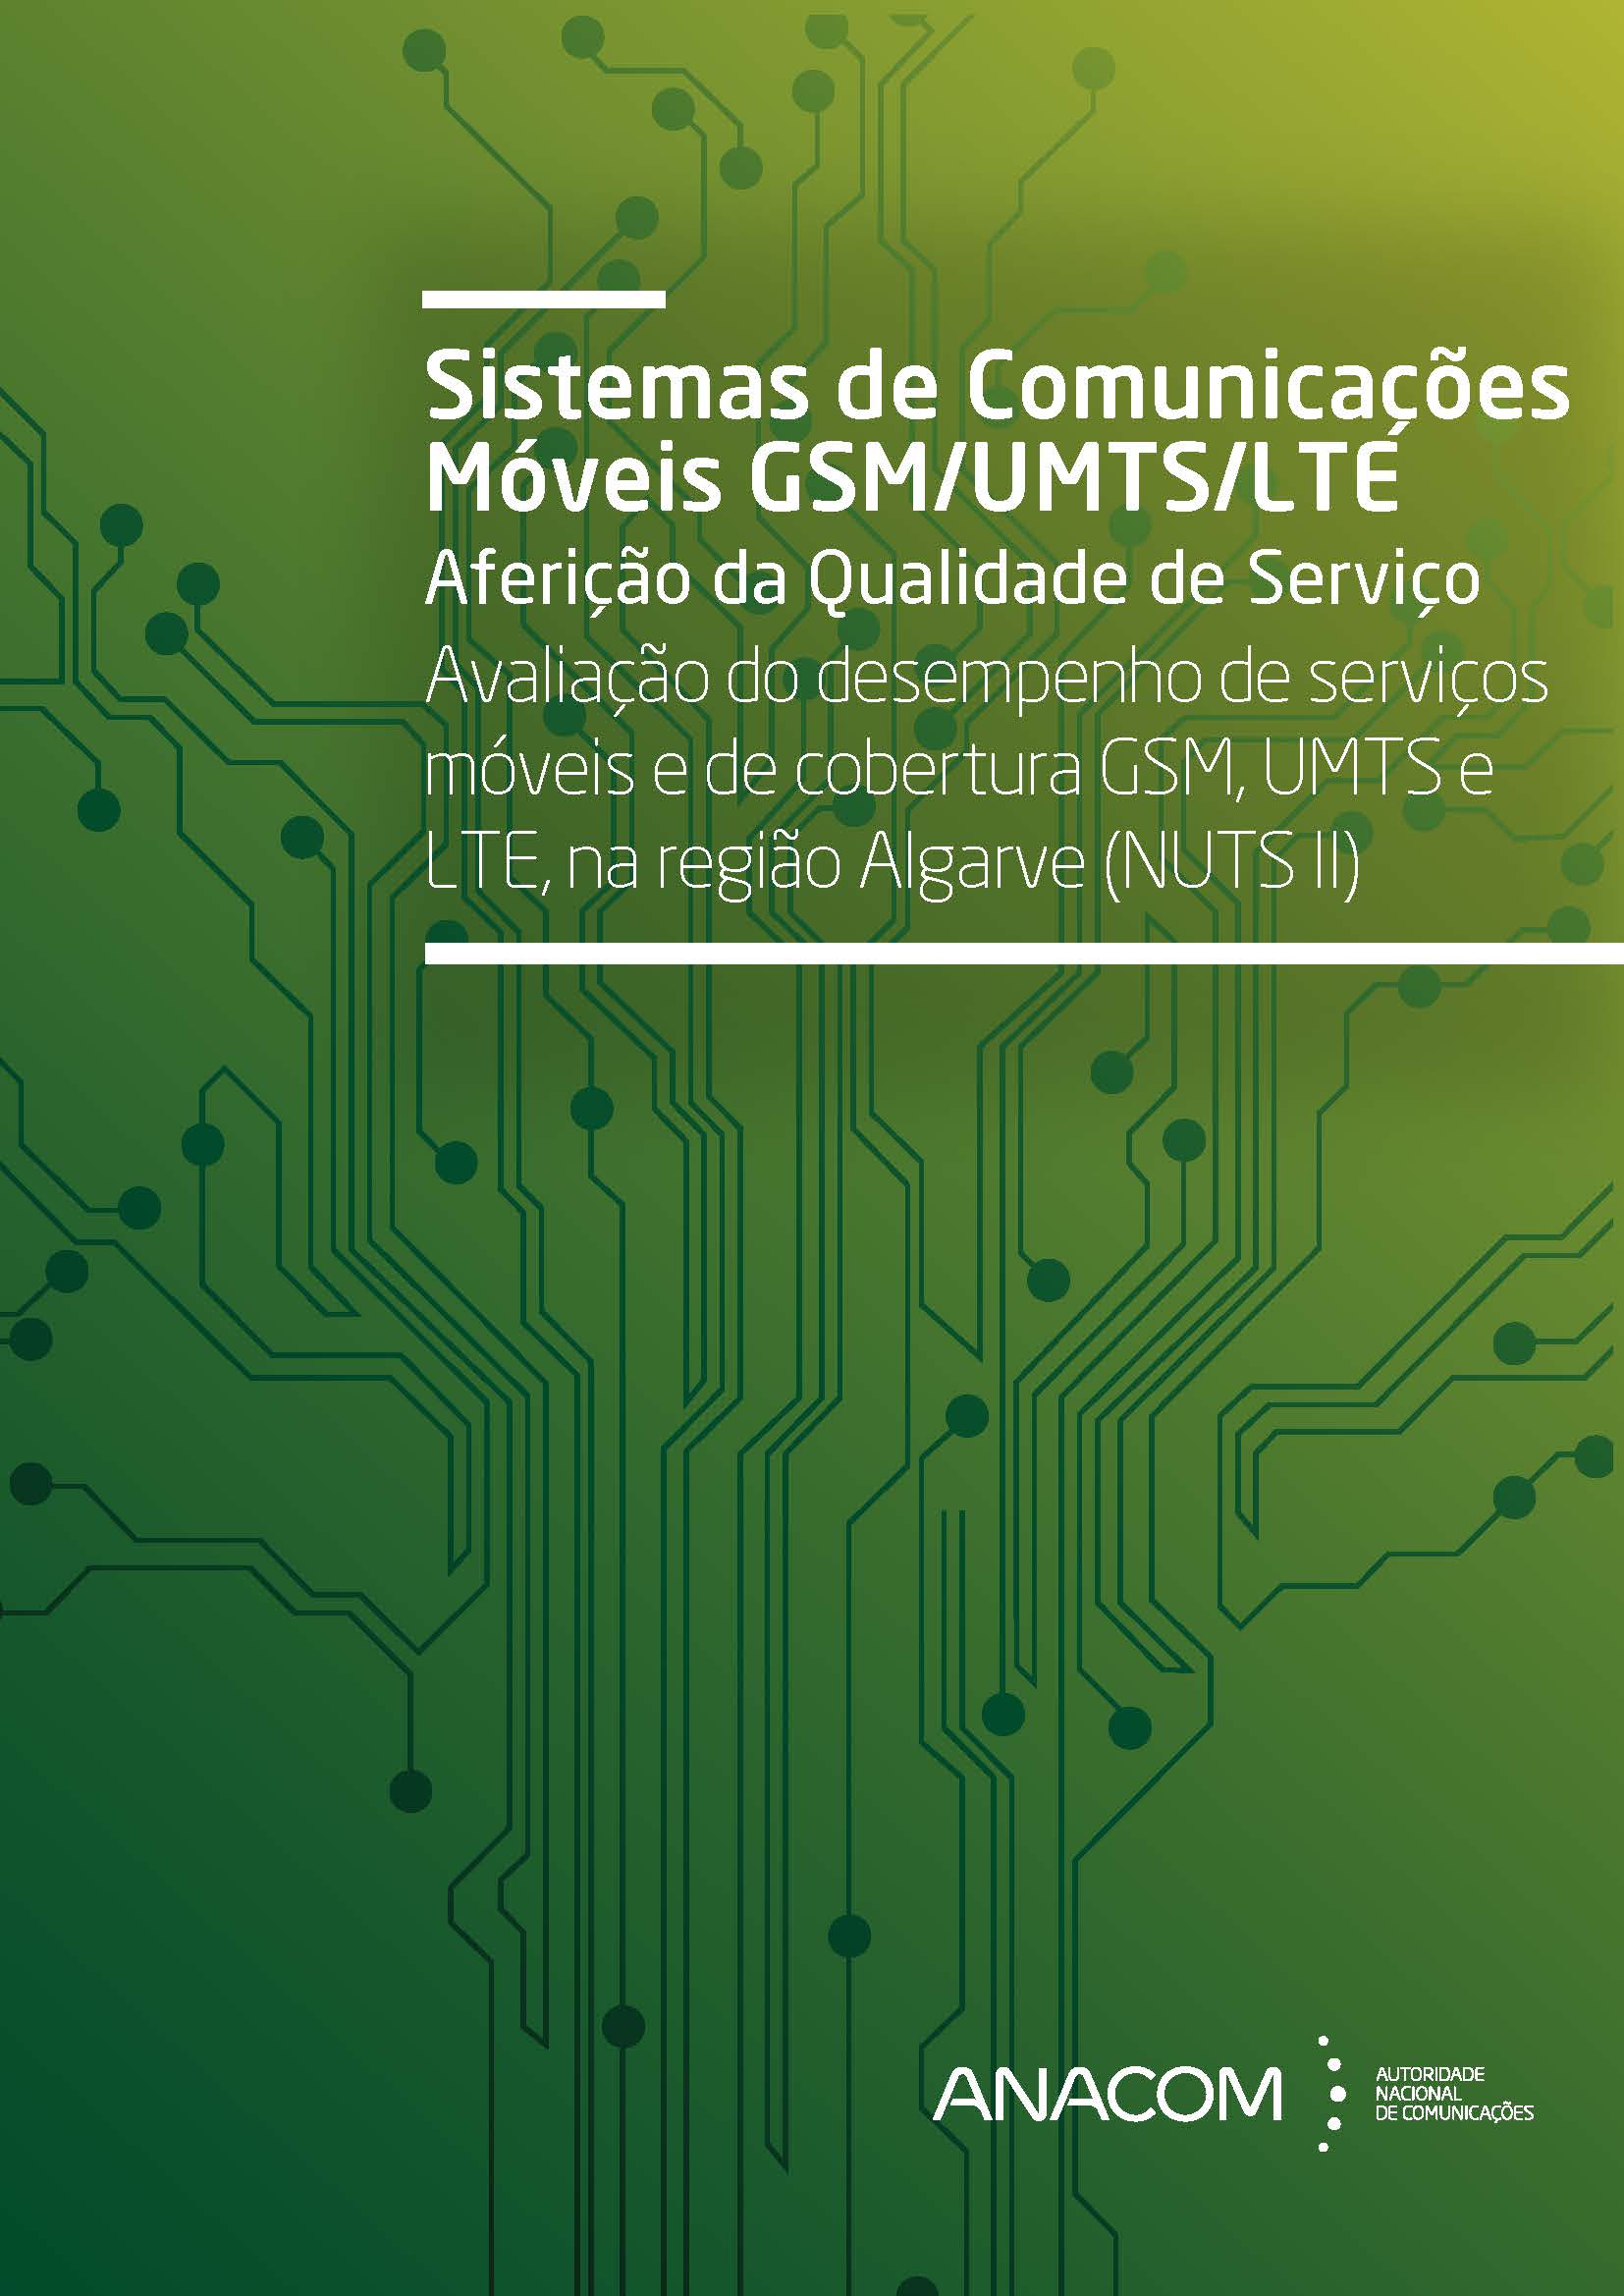 Avaliação do desempenho de serviços móveis e de cobertura GSM, UMTS e LTE, na região Algarve (NUTS II)